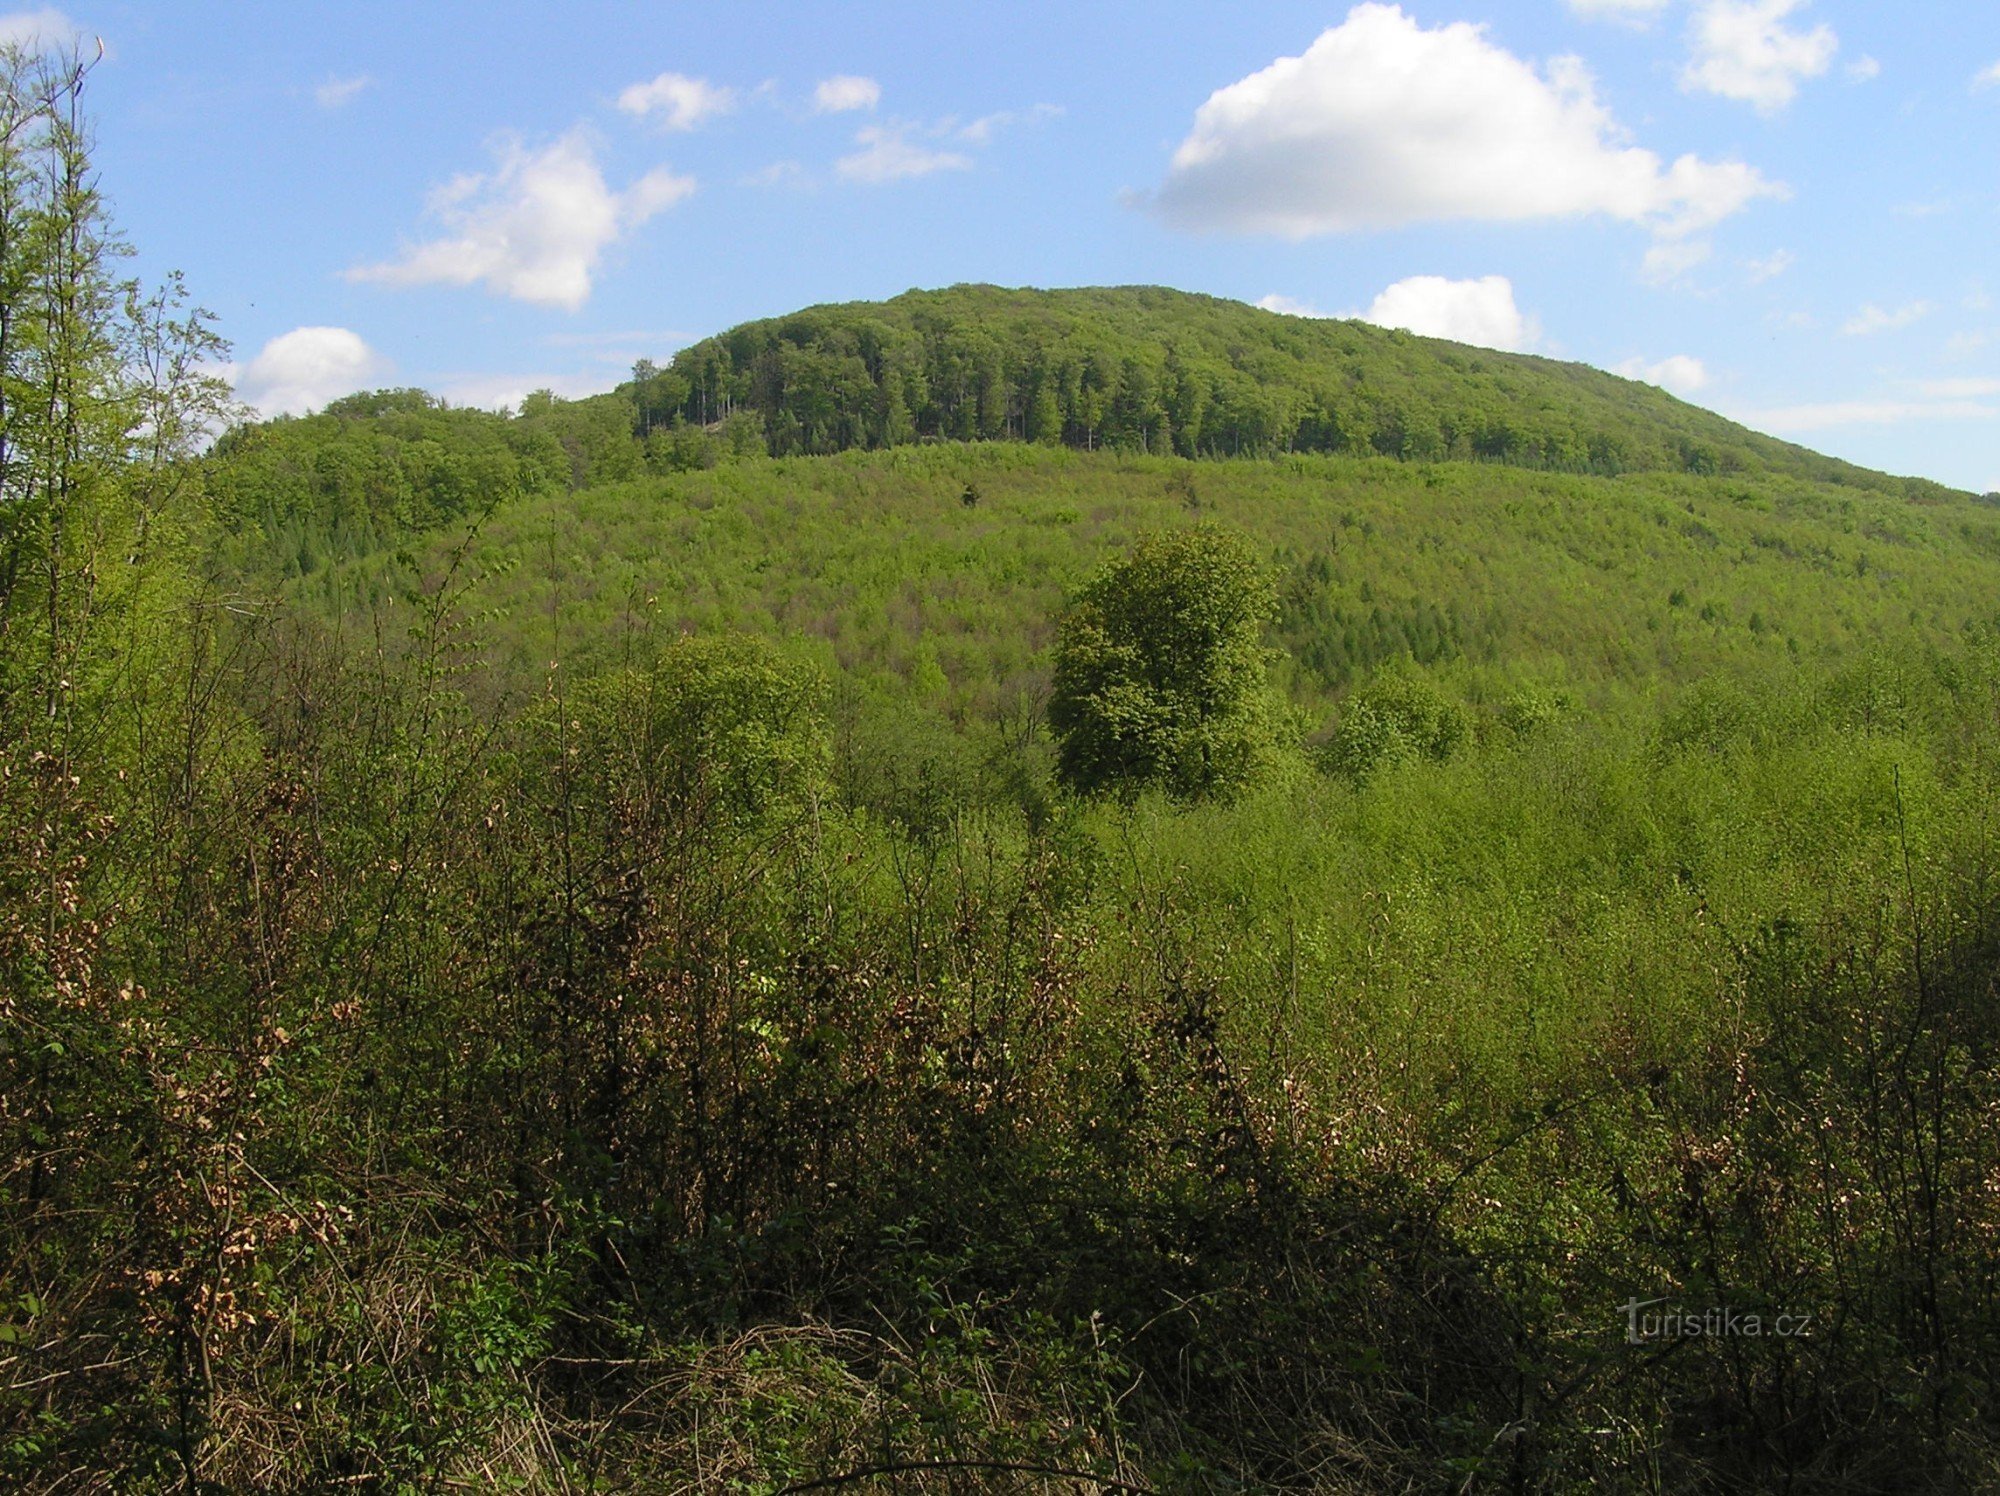 visão geral de Holý kopec do sudoeste - a reserva é ocupada por um poro florestal mais antigo